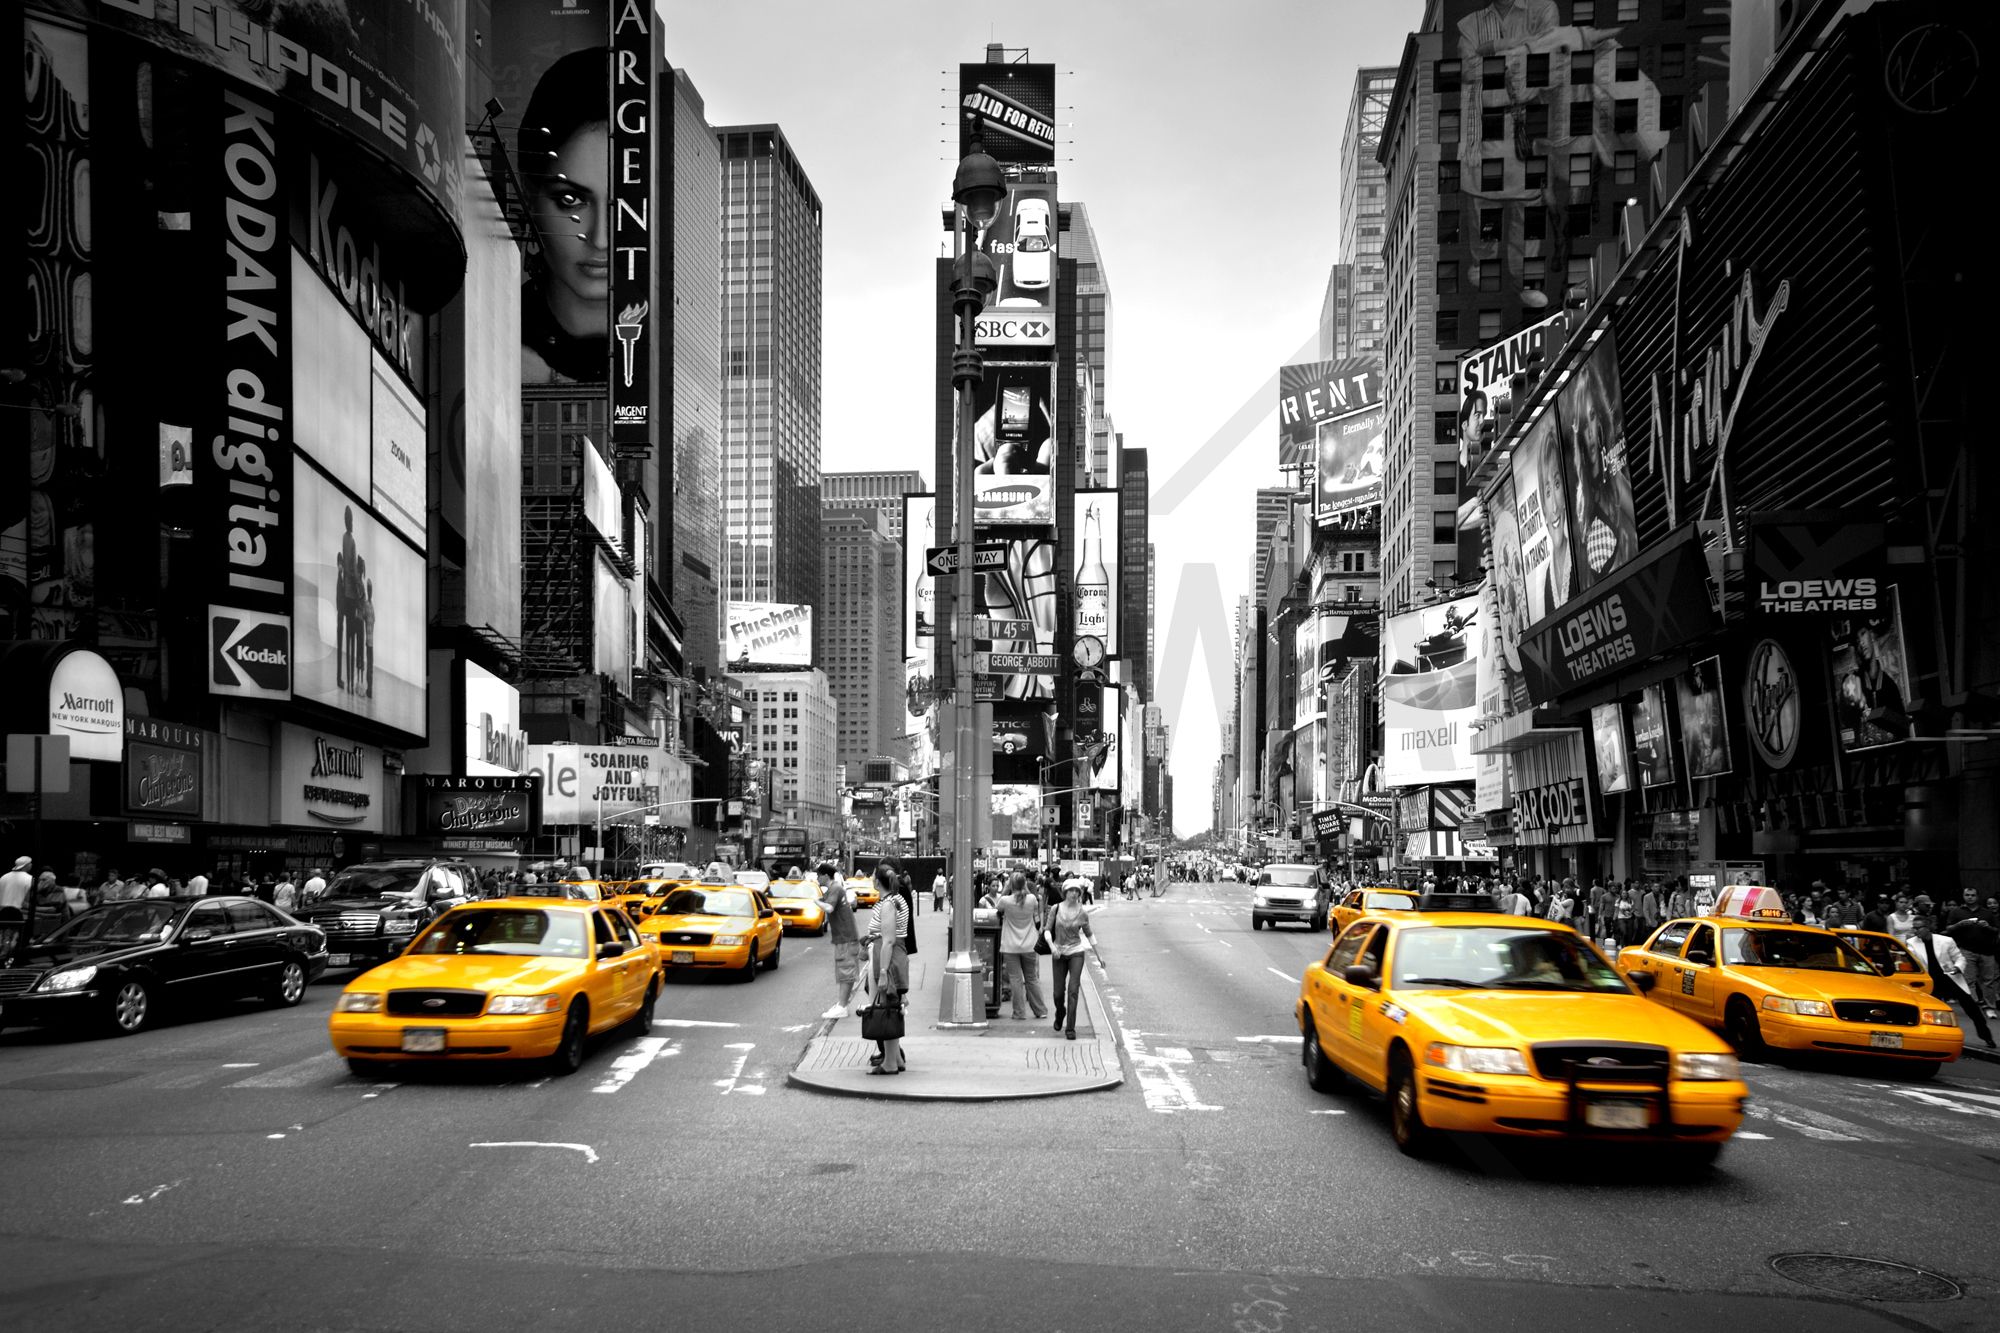 papier peint carré noir et blanc,taxi,véhicule,jaune,zone urbaine,ville